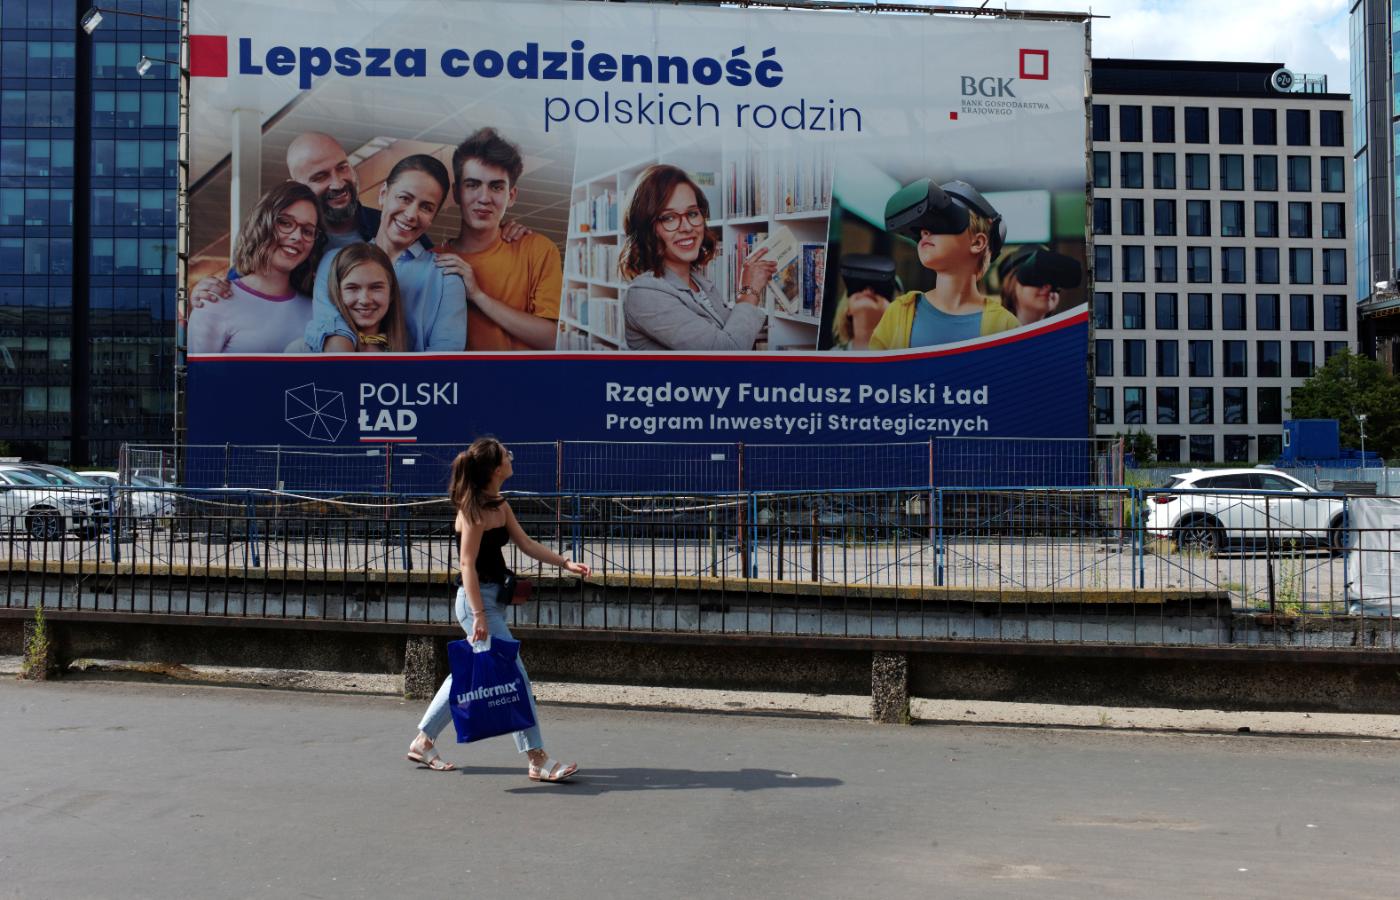 Wielkoformatowa reklama prezentująca rządowy program Polski Ład oraz unijny Fundusz Odbudowy